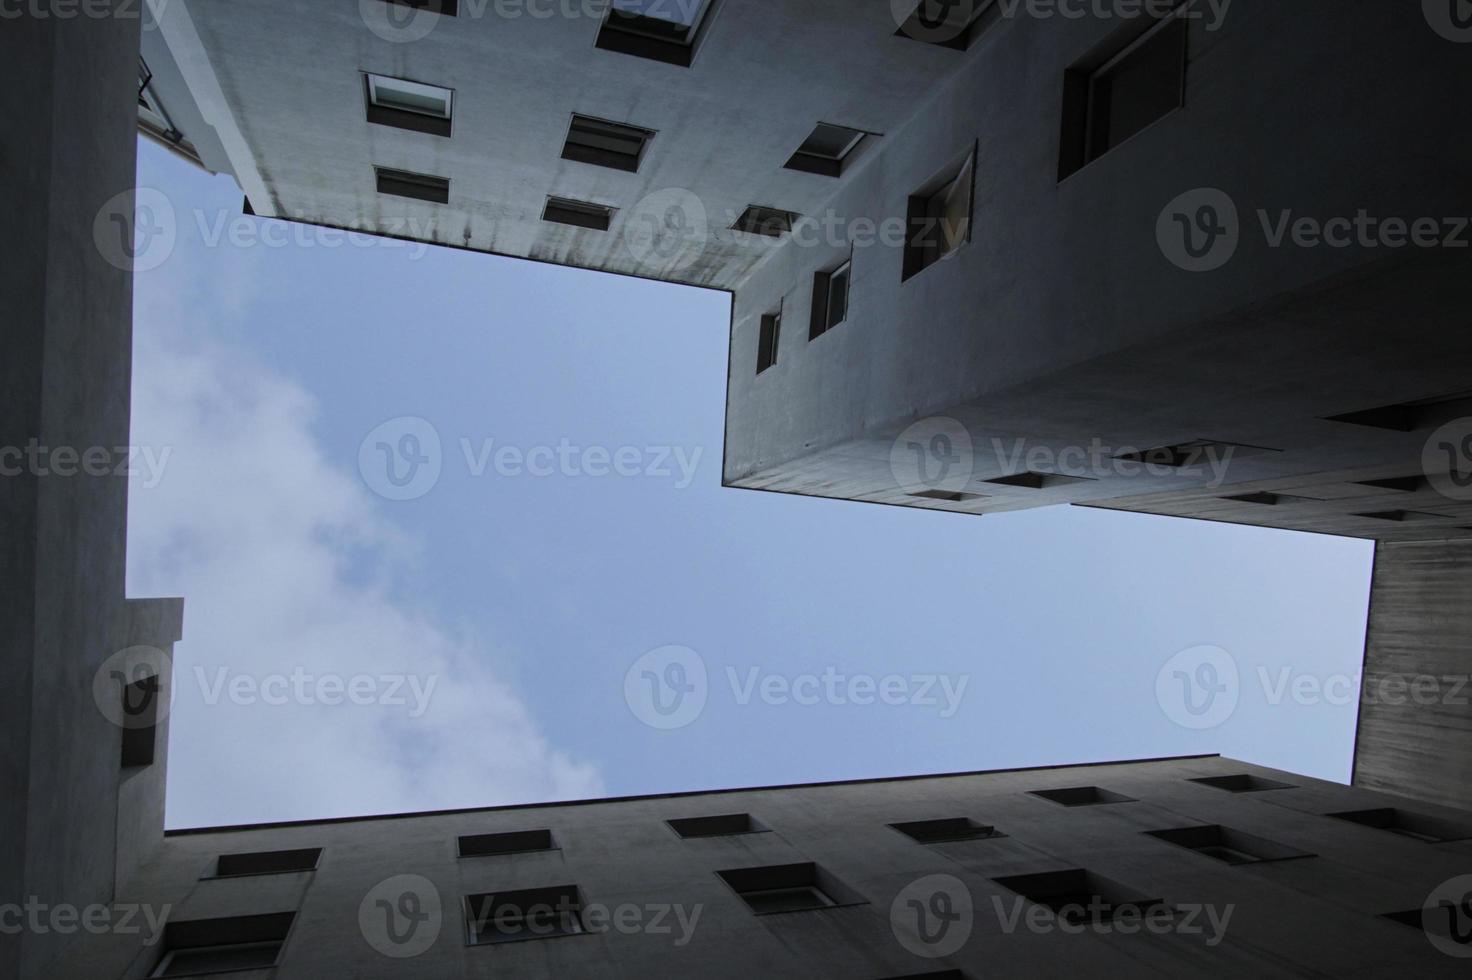 lappa av himmel mellan kontor byggnader foto